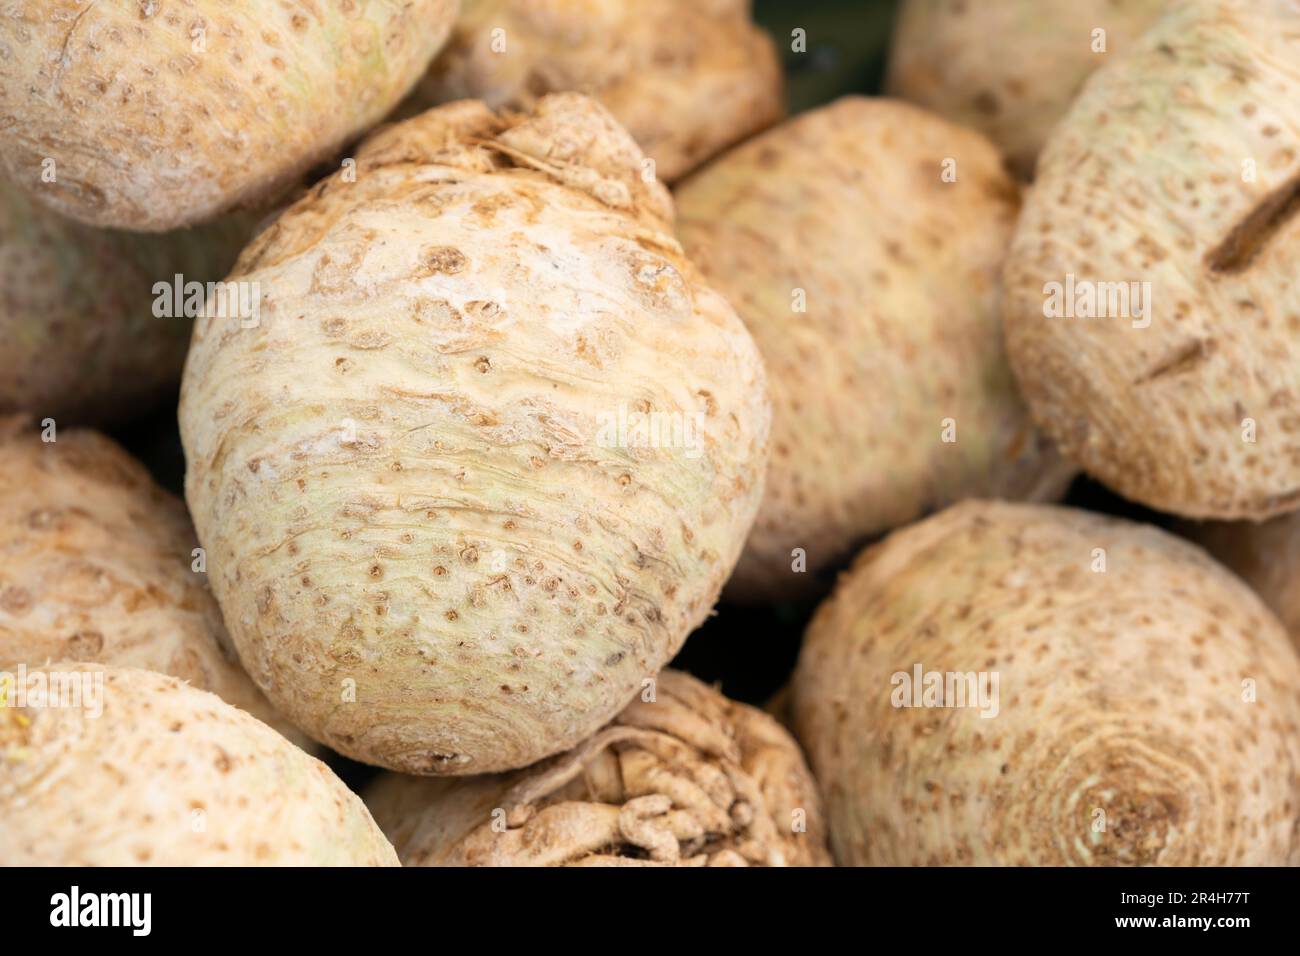 Sedano (Apium graveolens), chiamato anche radice di sedano, sedano manopola, e sedano rapa-radicato visualizzato su una stalla di mercato. Profondità di campo ridotta Foto Stock